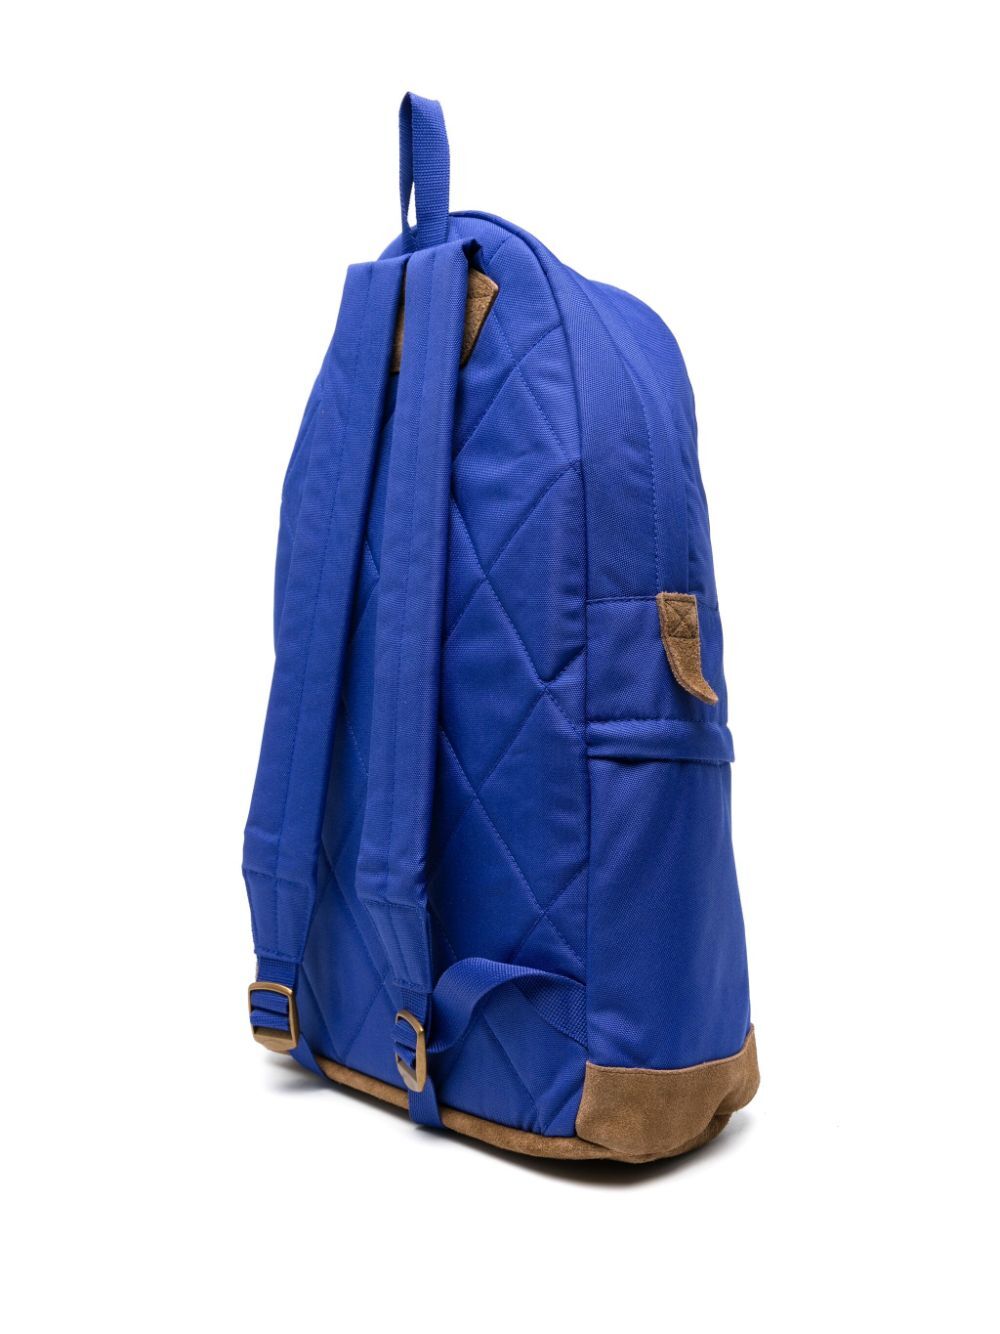 Ranger Large Backpack